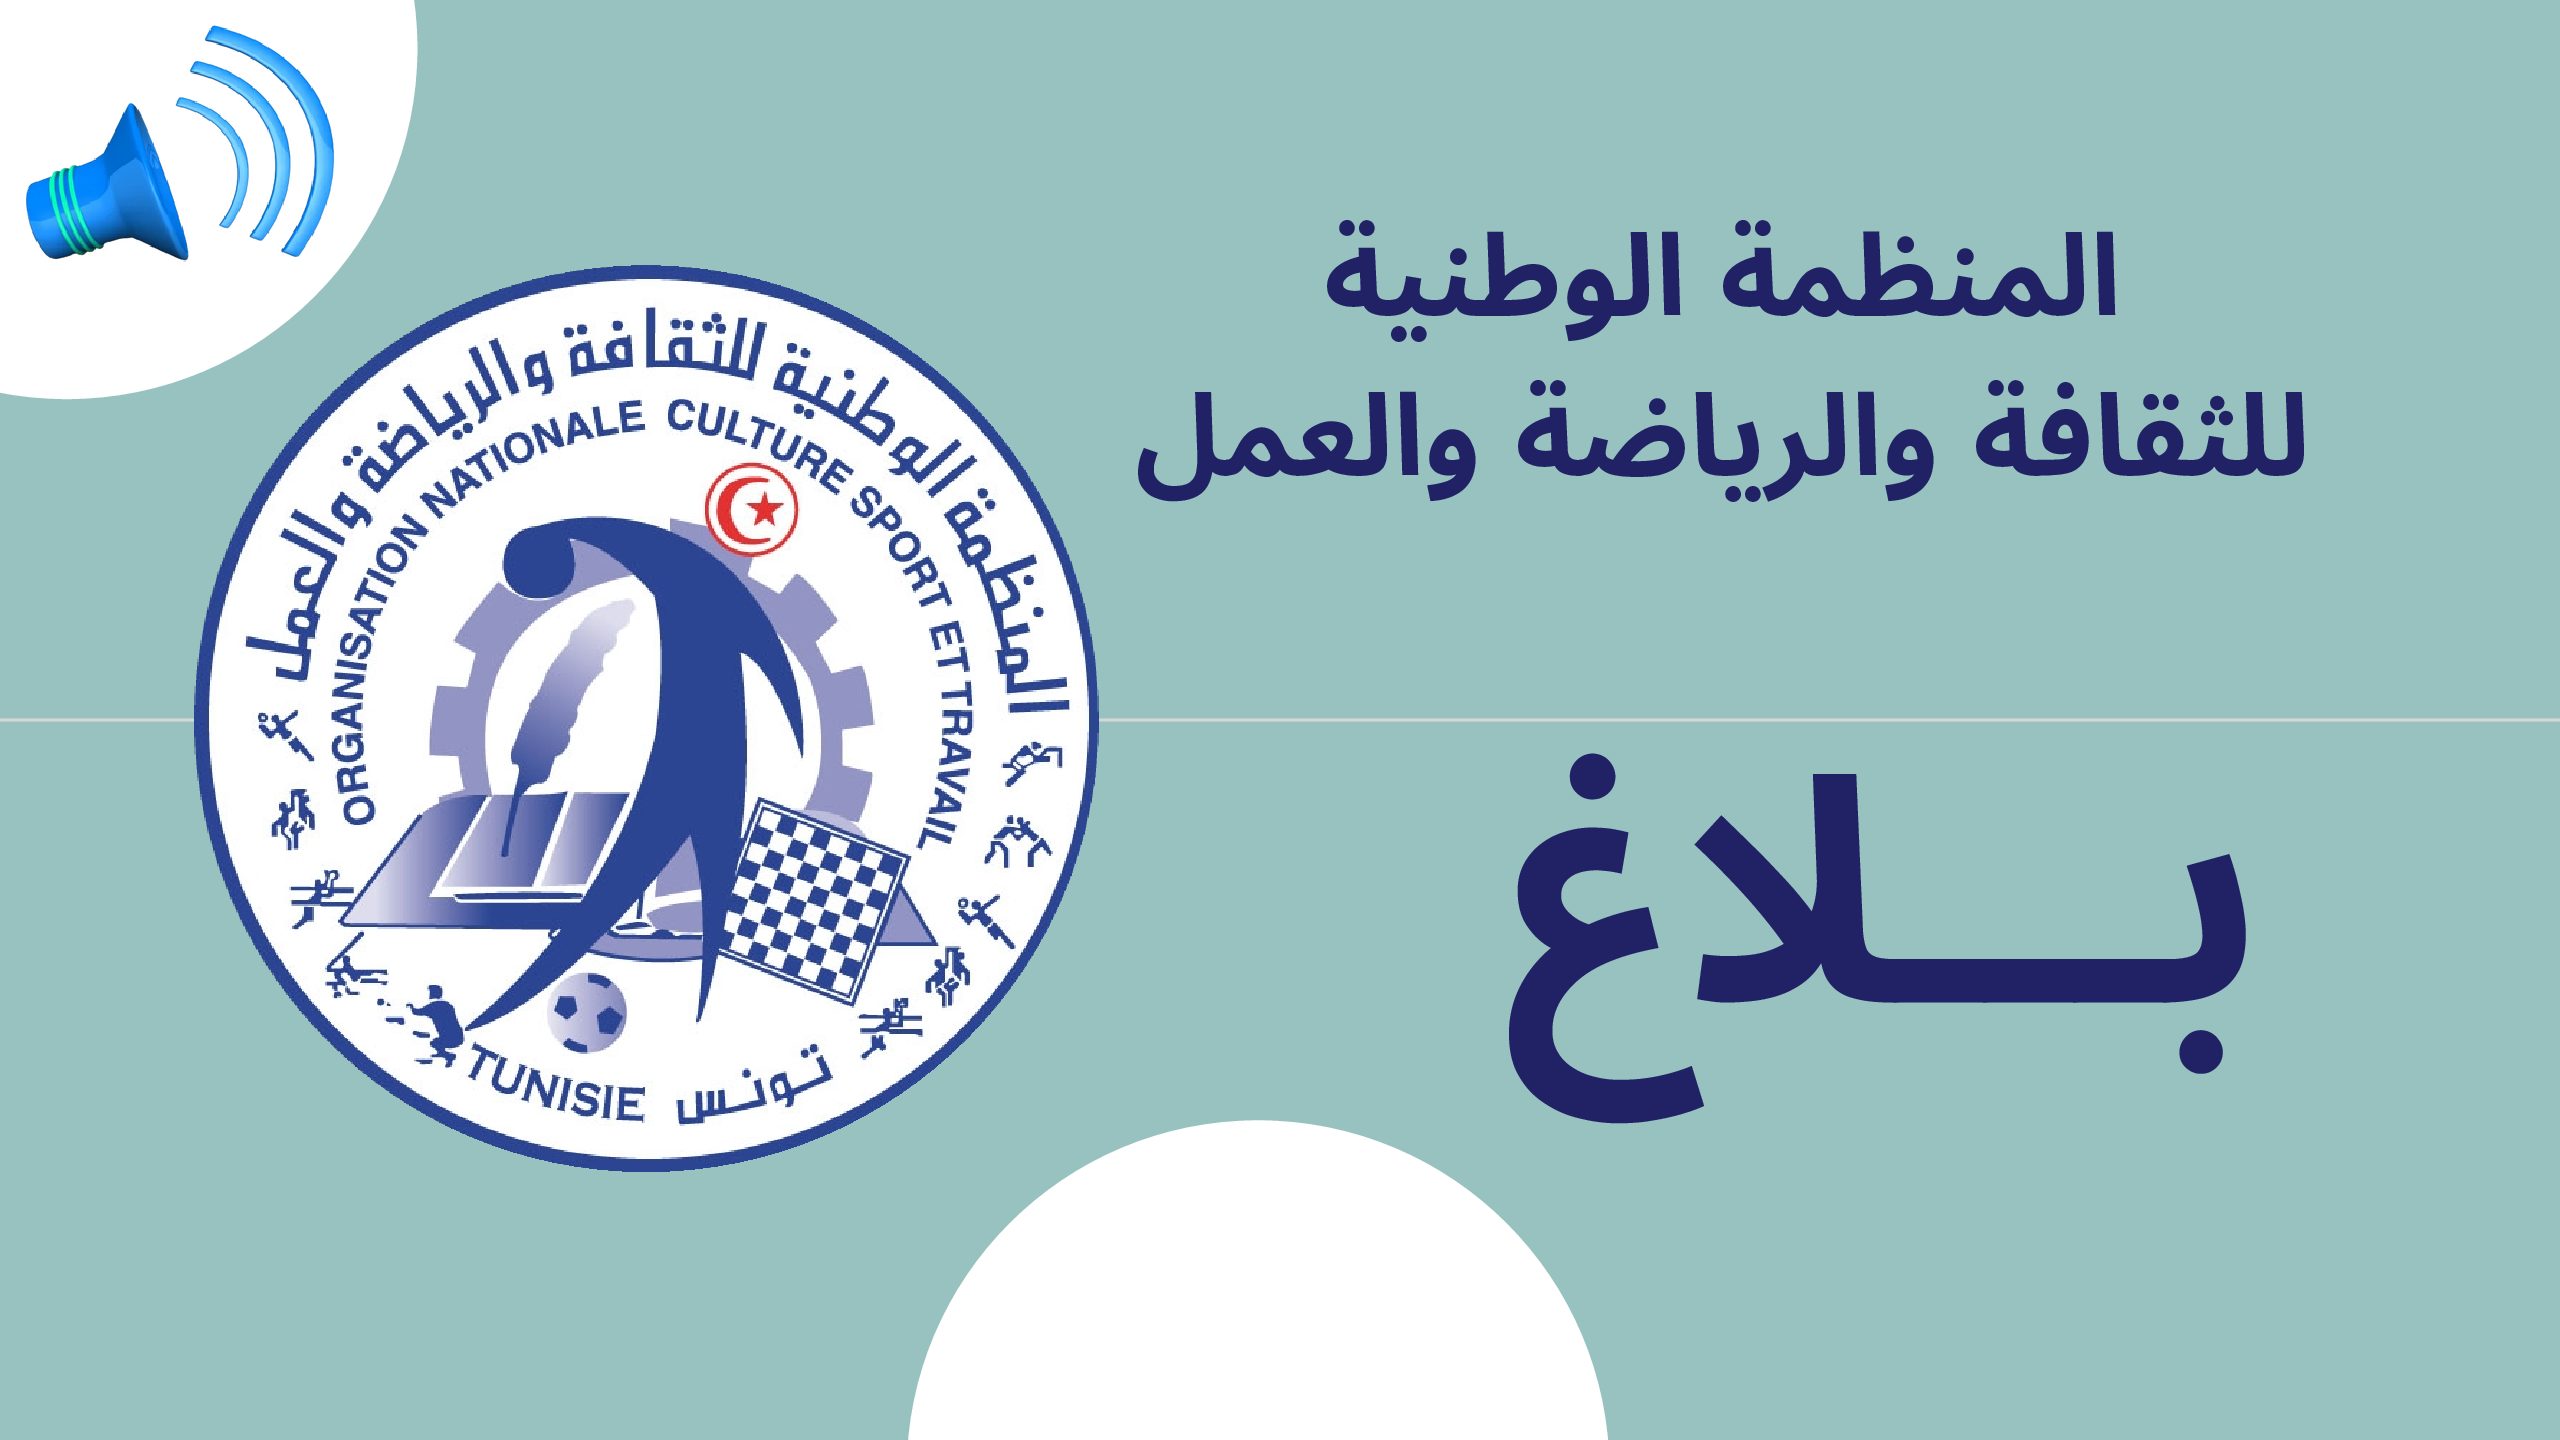 دعوة للمشاركة في الدورة العربية الدولية العمالية 44 للشطرنج